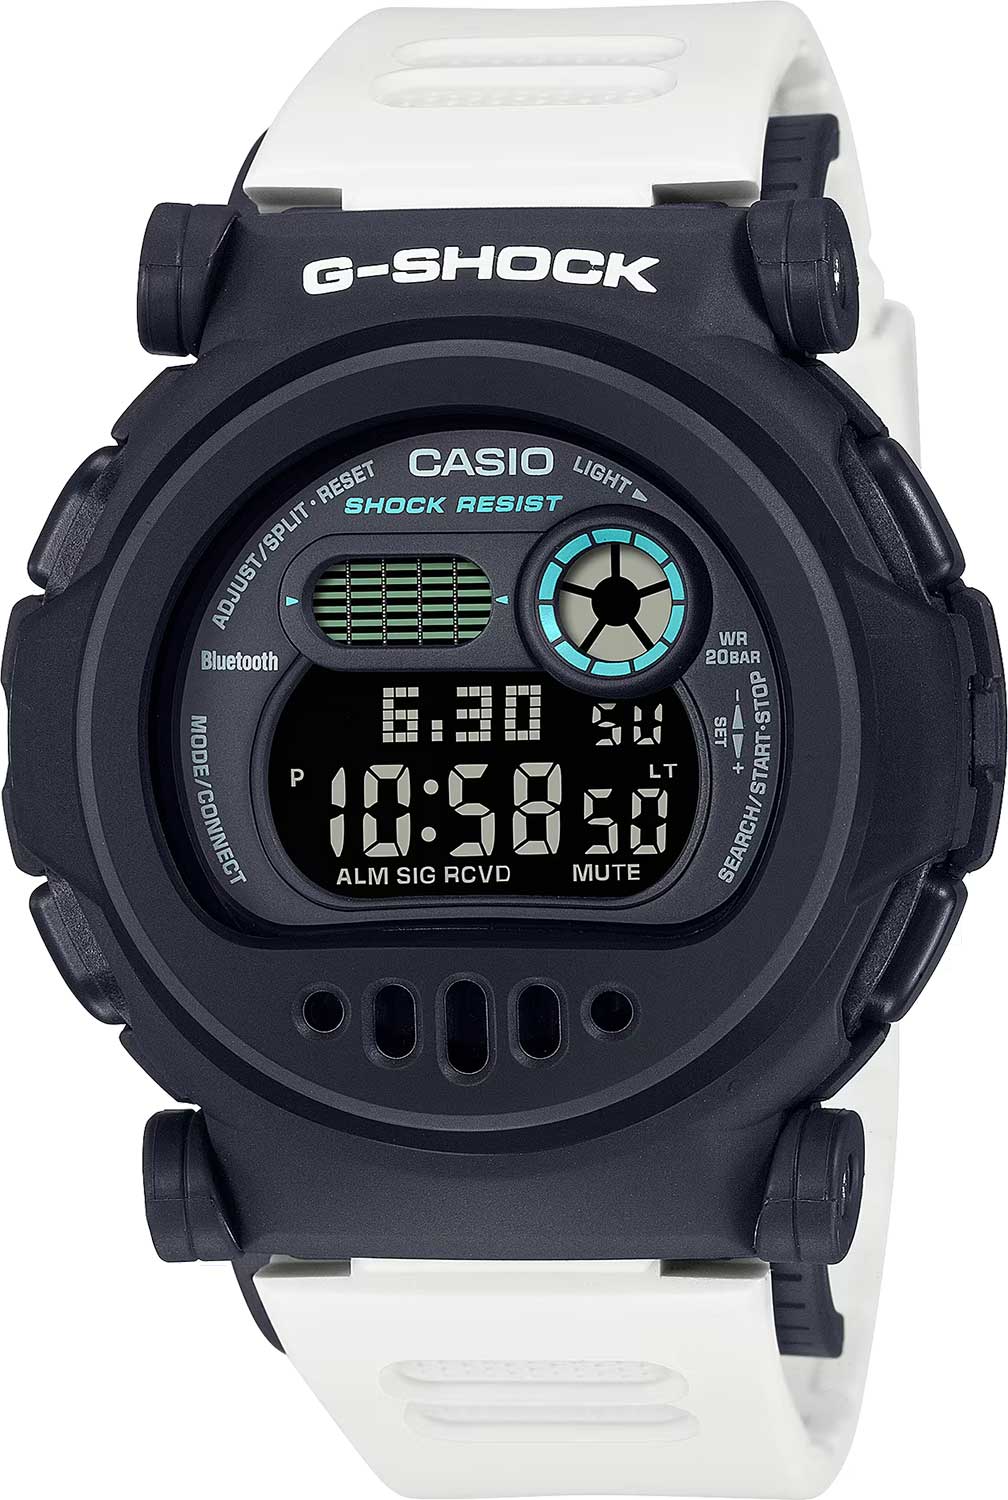    Casio G-SHOCK G-B001SF-7  